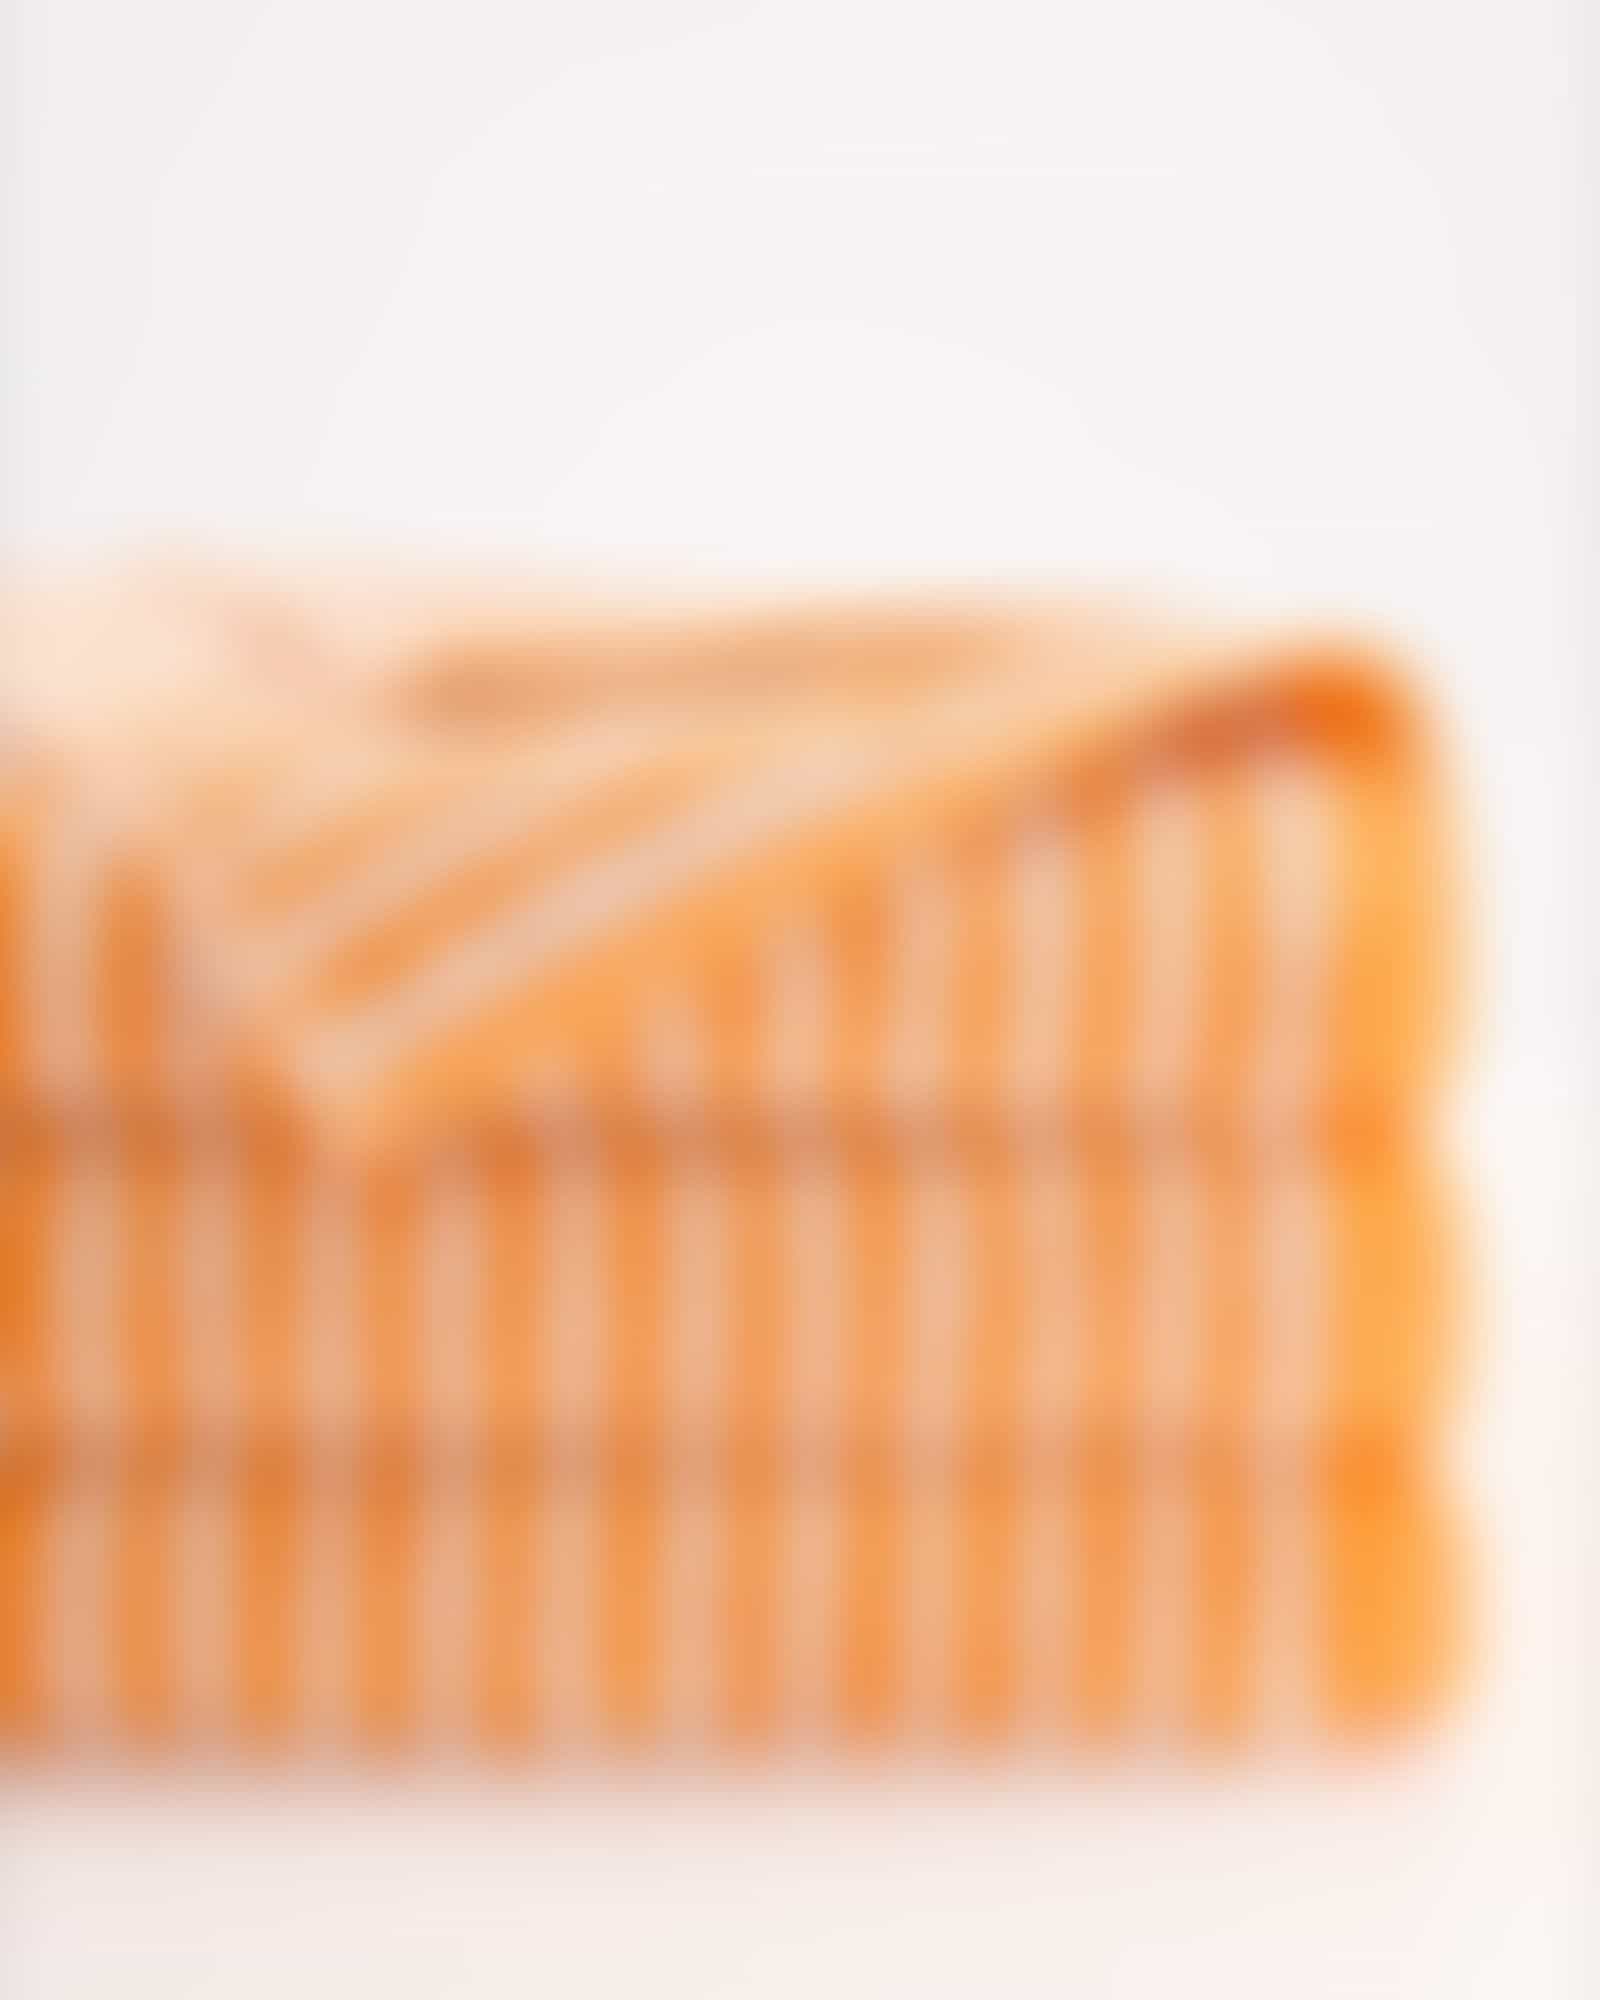 Cawö Handtücher Campus Ringel 955 - Farbe: mandarine - 33 - Waschhandschuh 16x22 cm